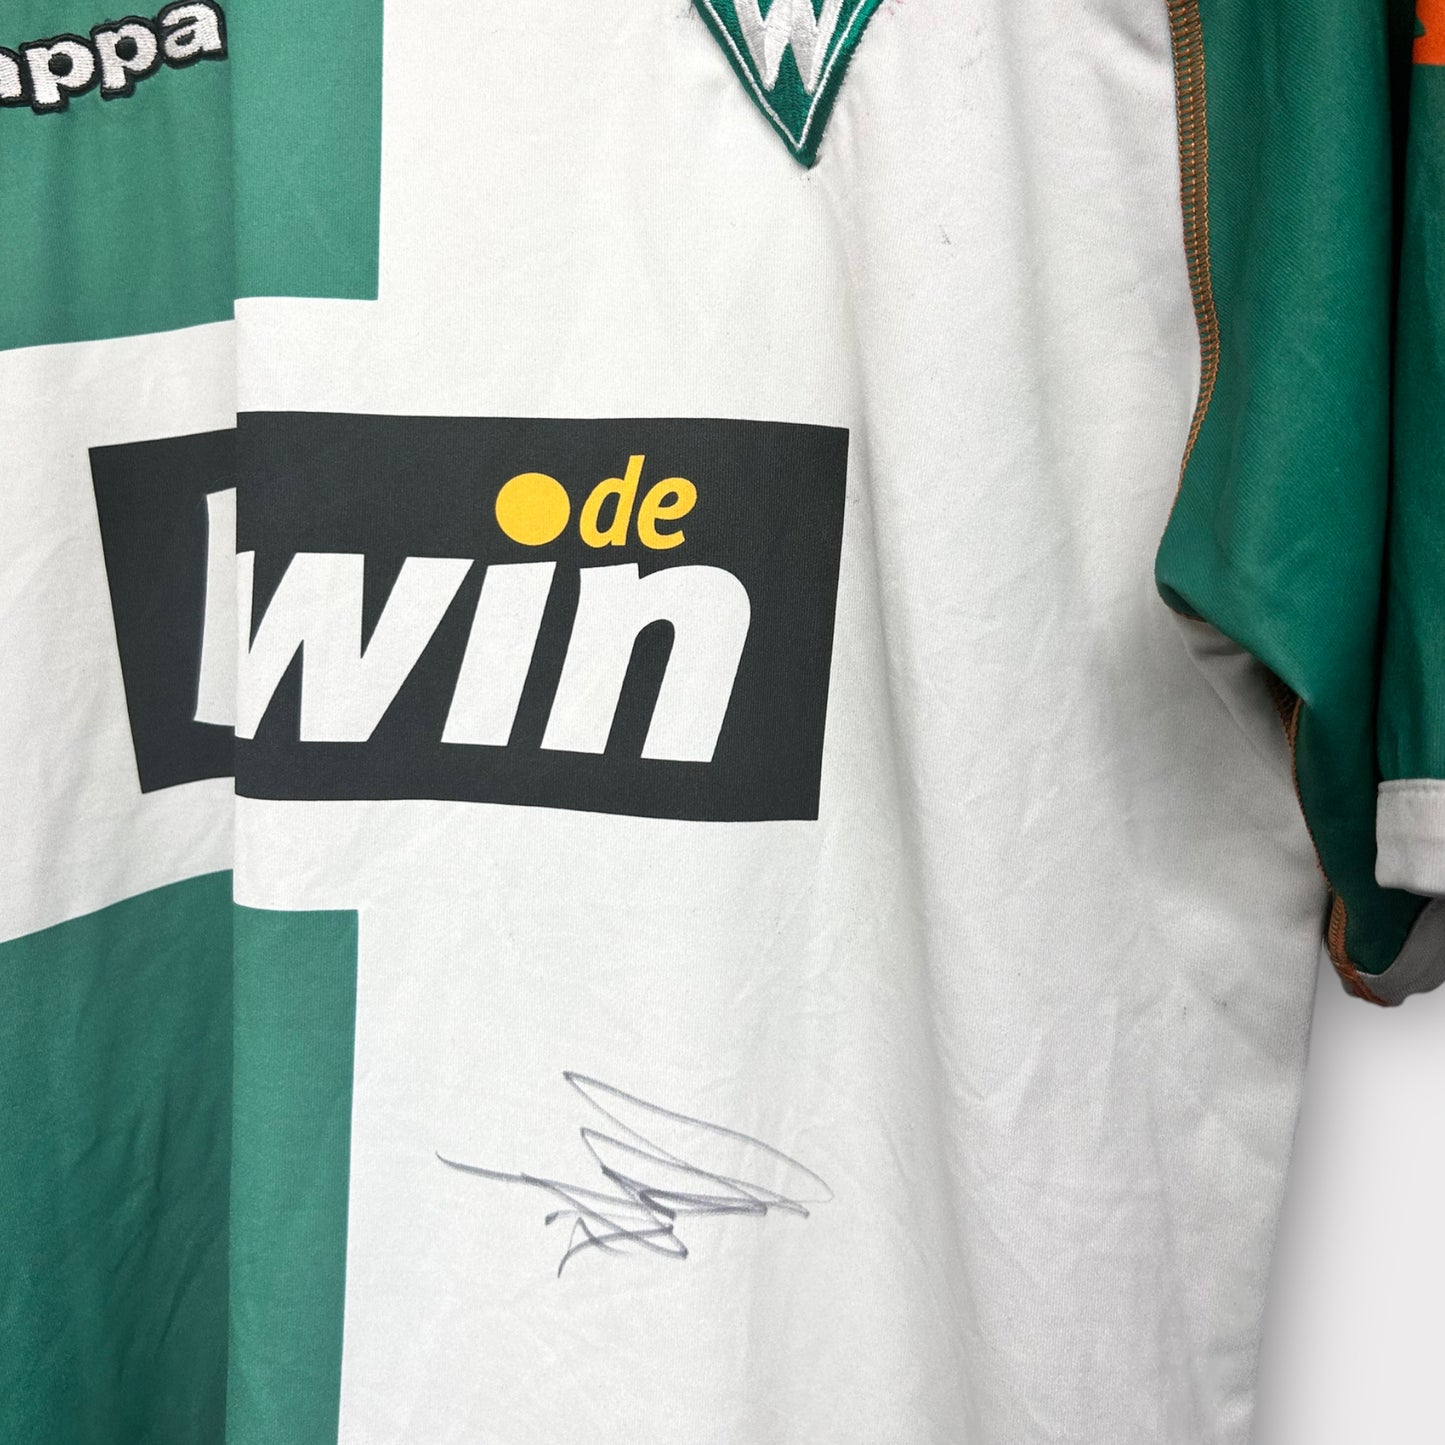 Werder Bremen 2006/07 Home Shirt - Signed by Zidan 9*